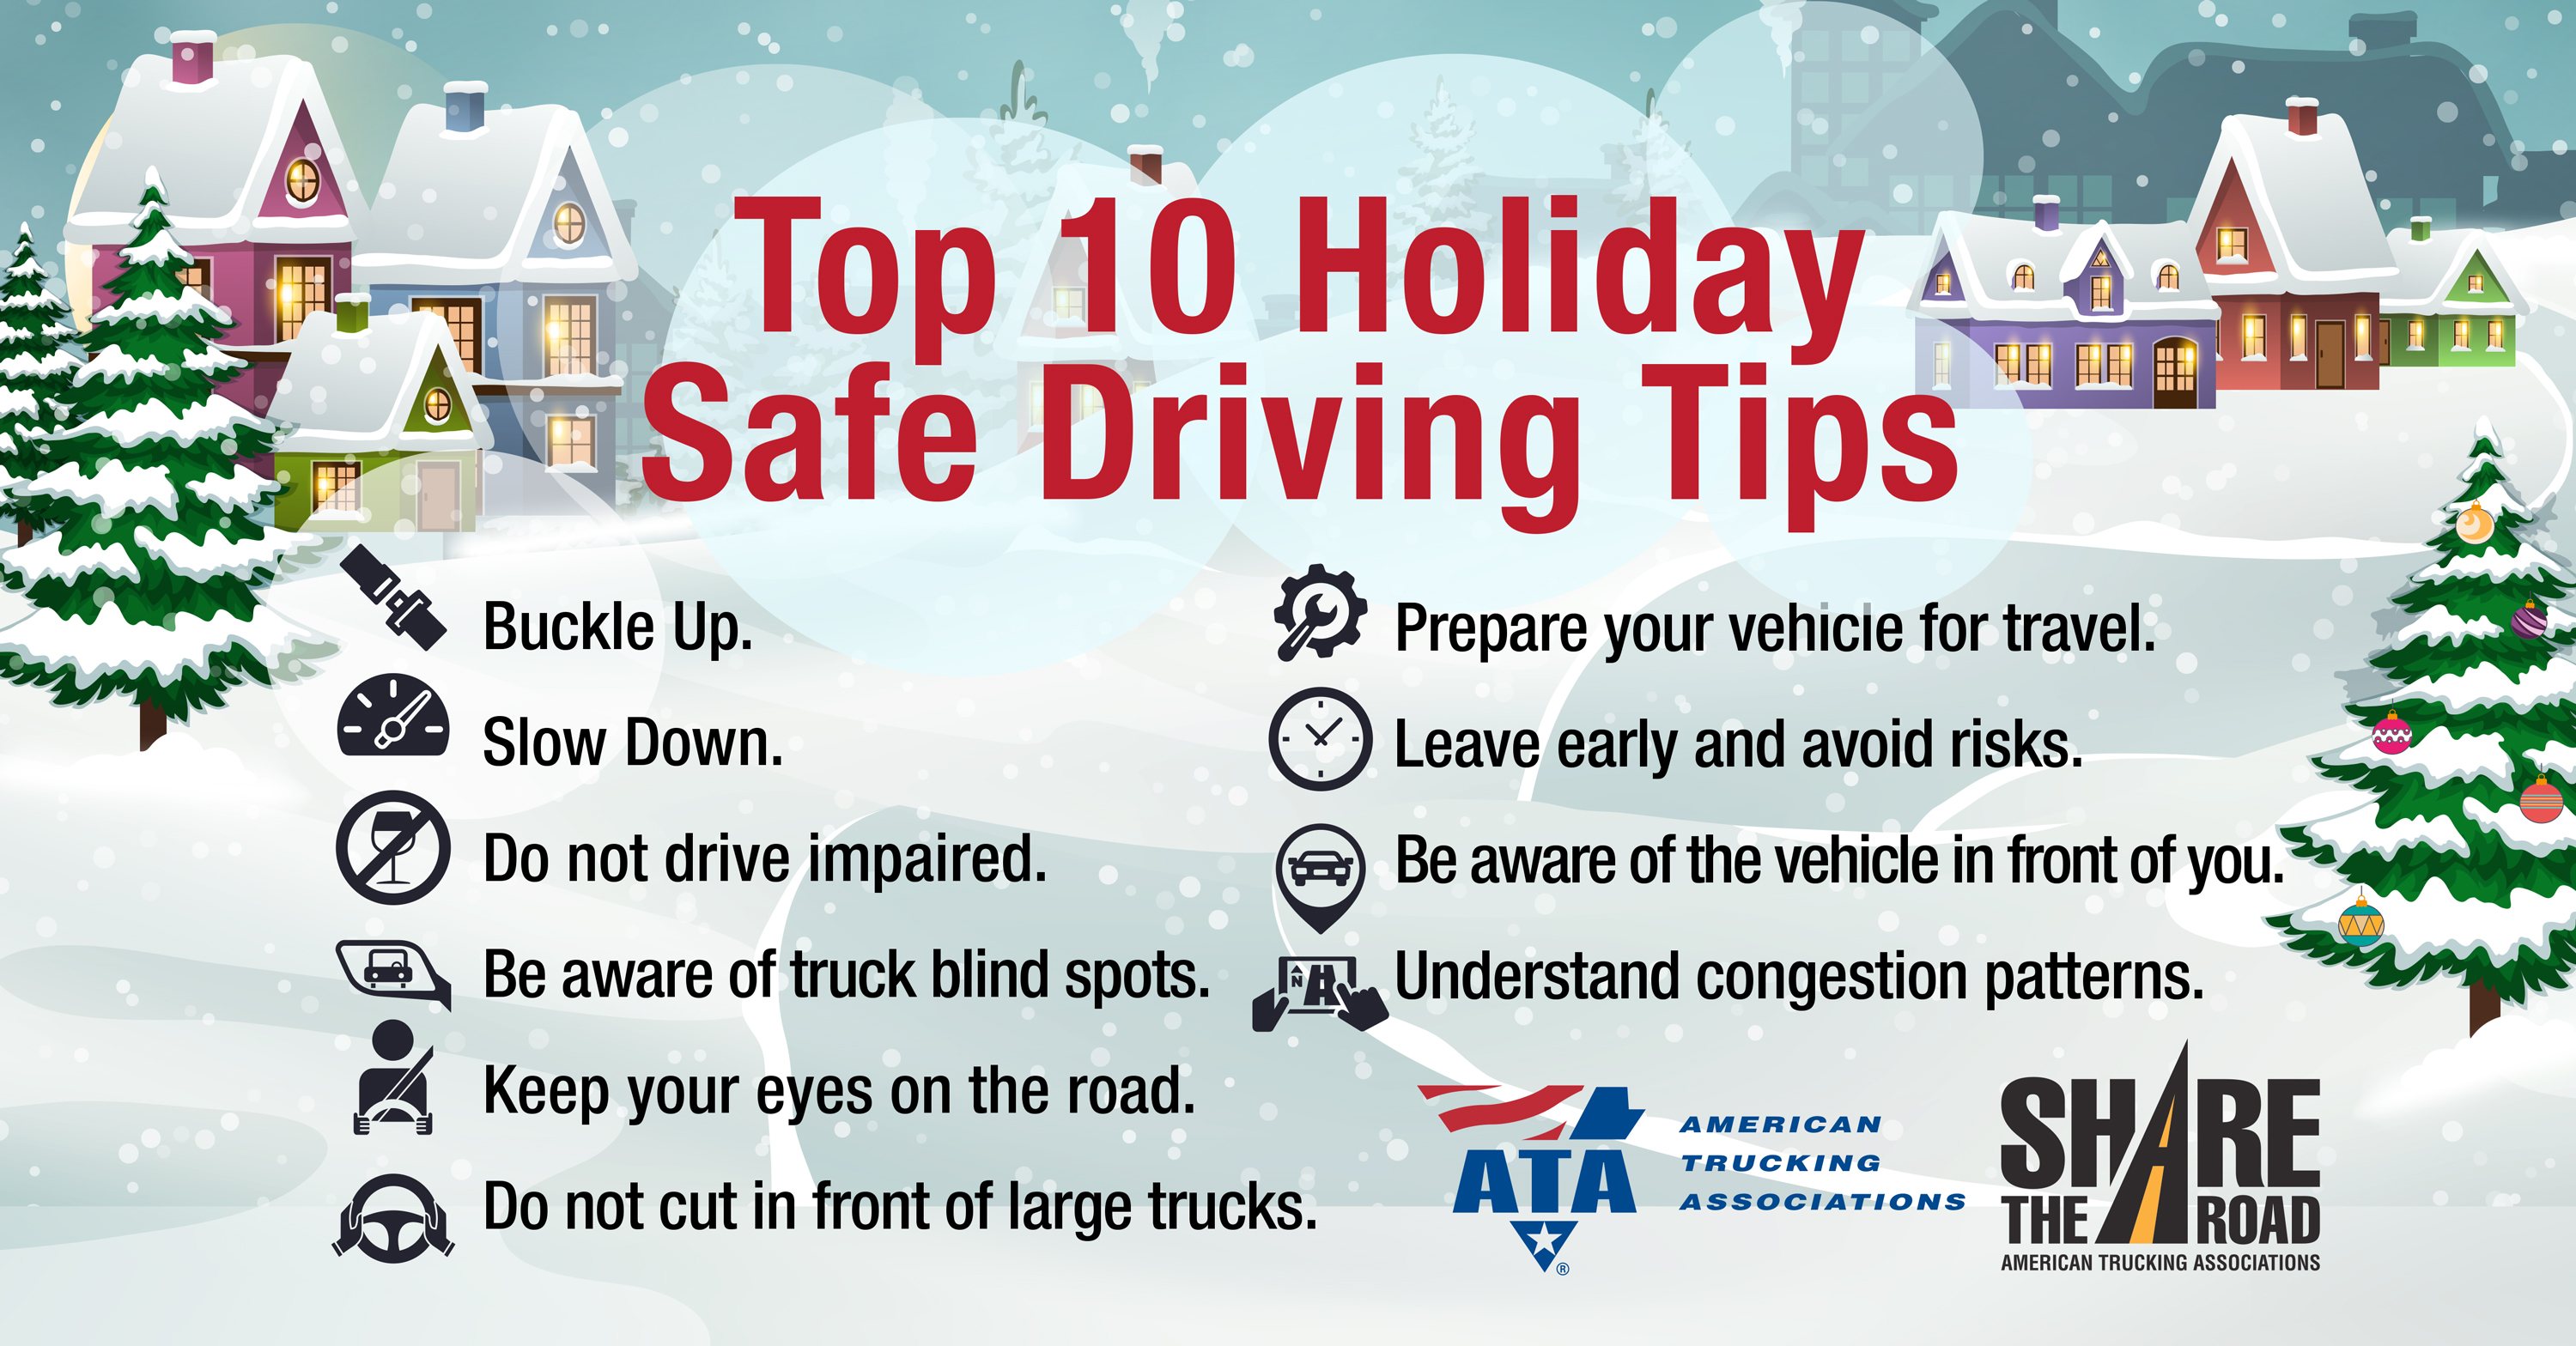 ATA Safe Driving Tips